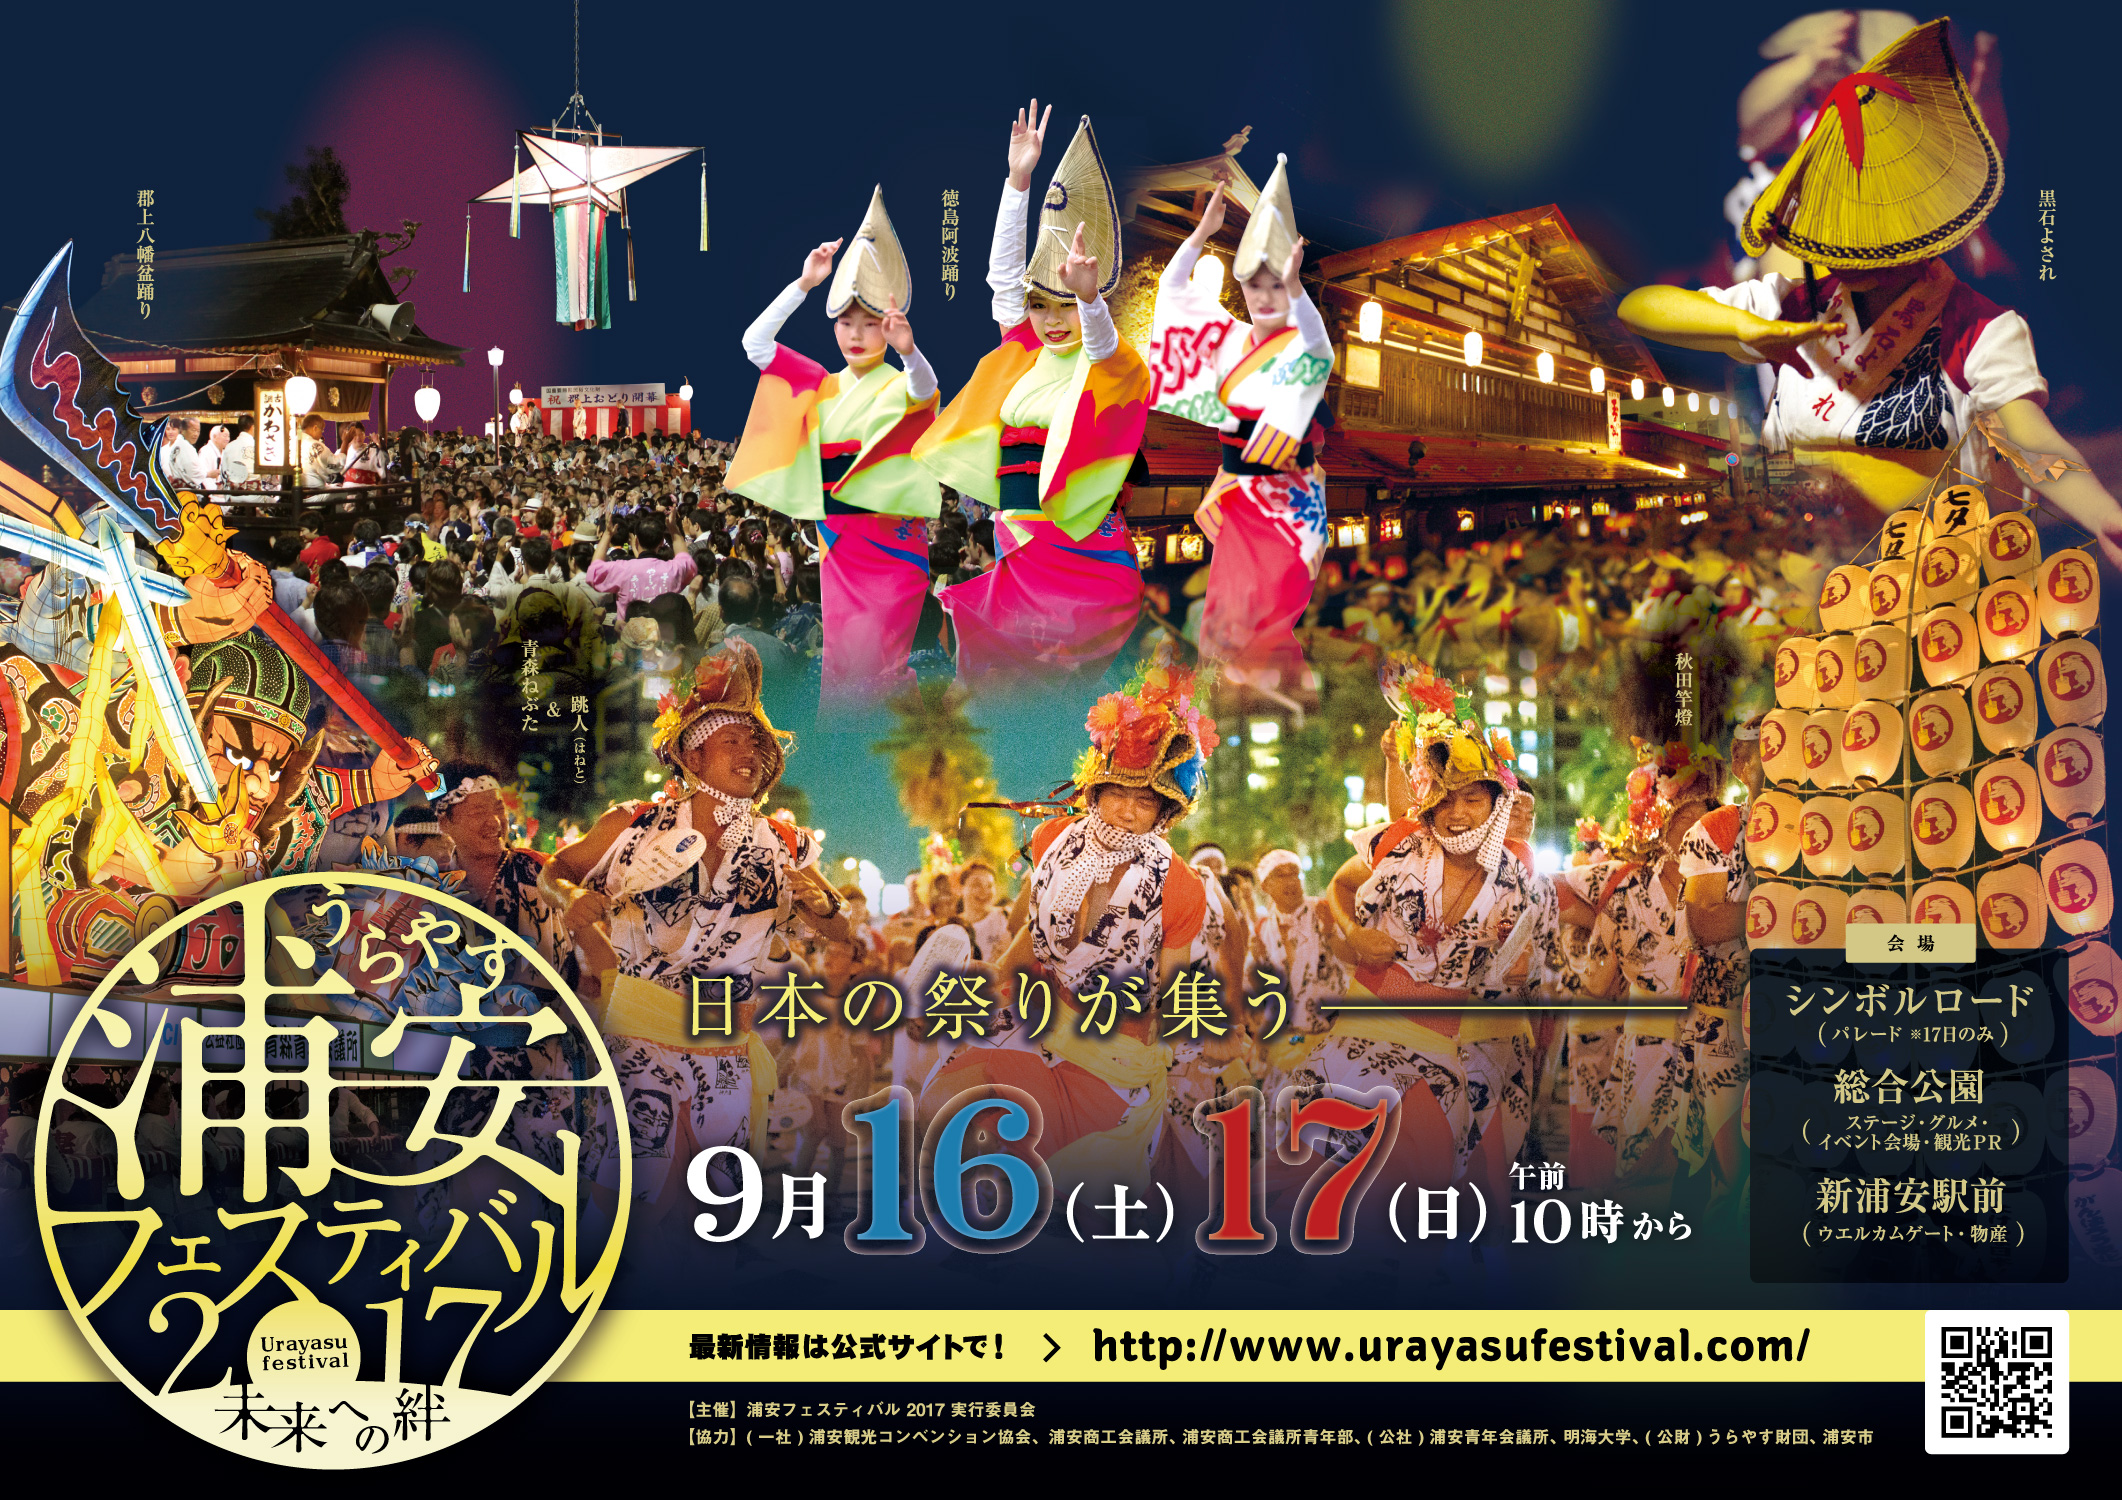 【地域活動】浦安フェスティバル2017パレード参加【9/17】